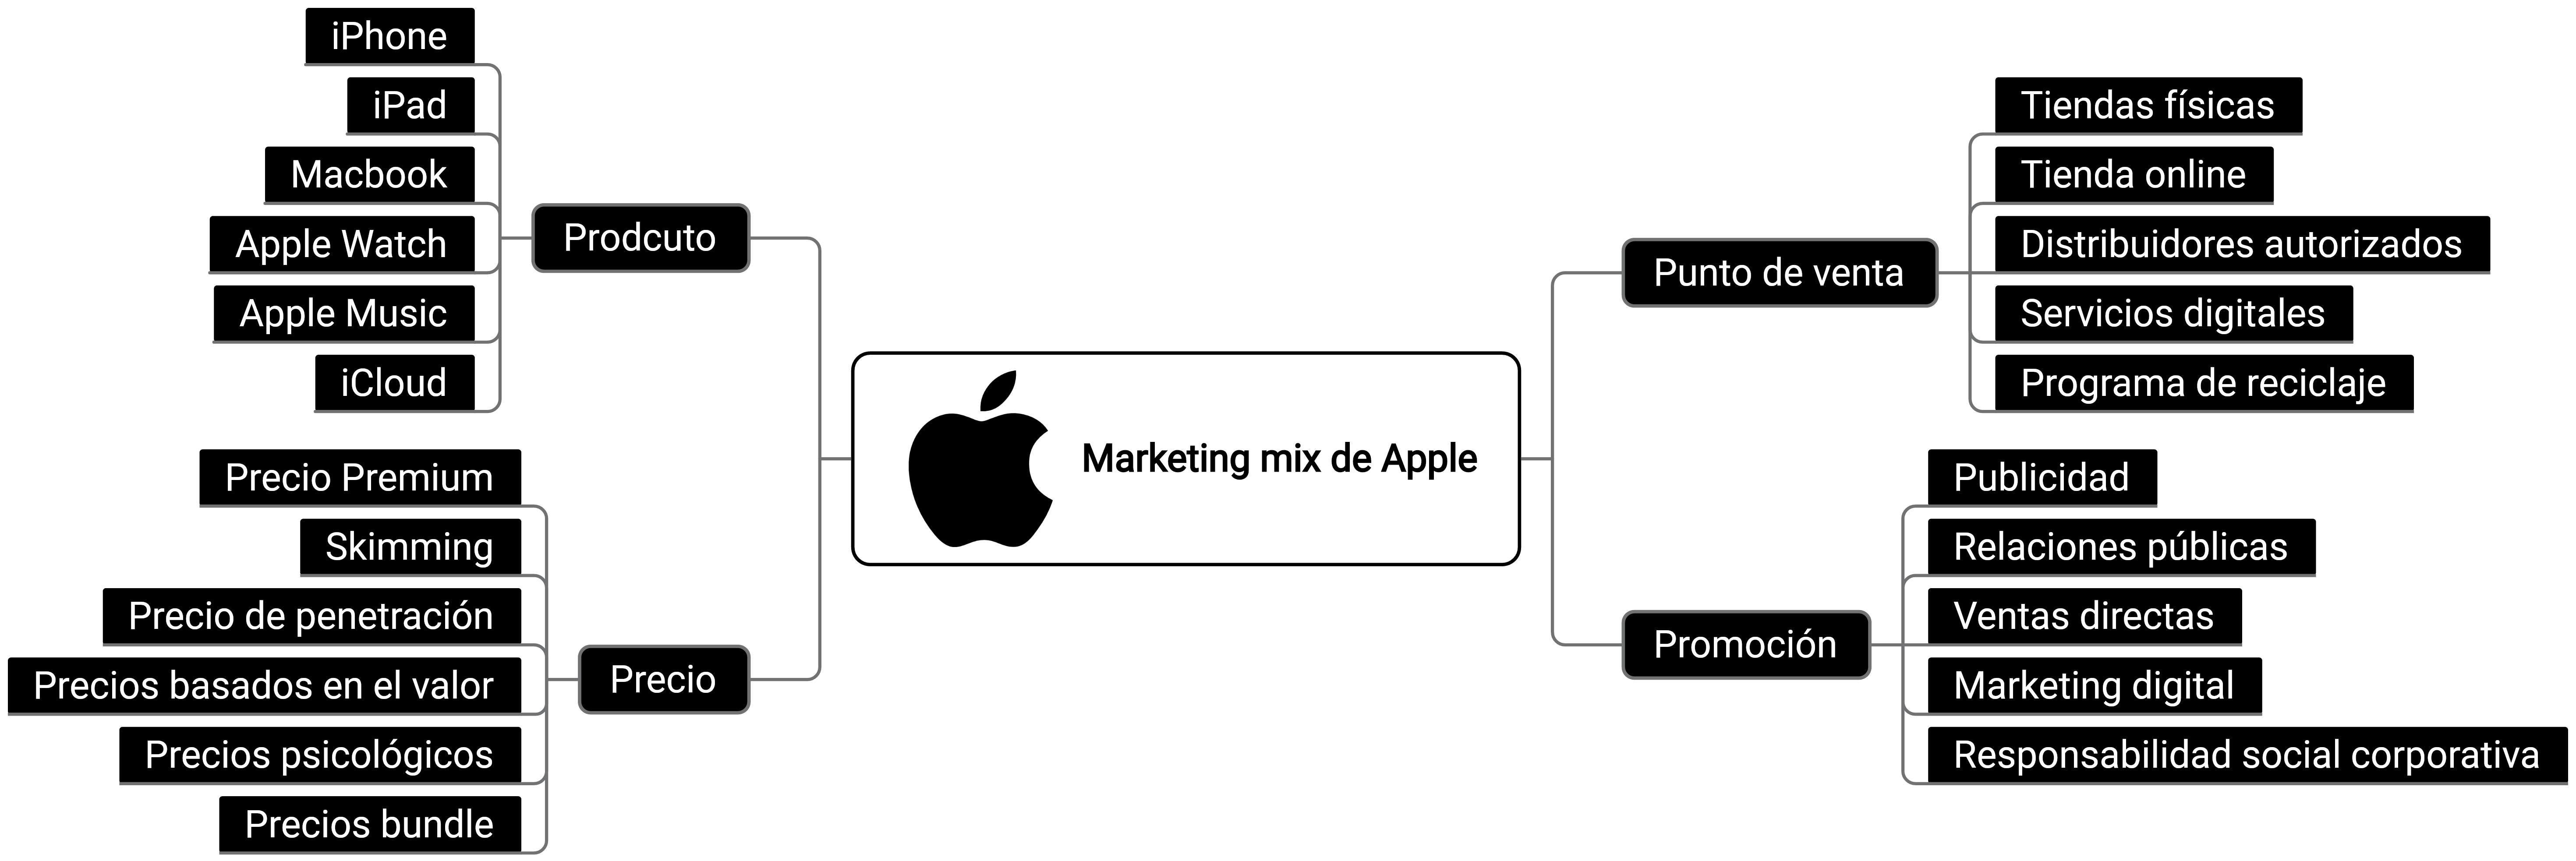 Mapa mental del marketing mix de Apple